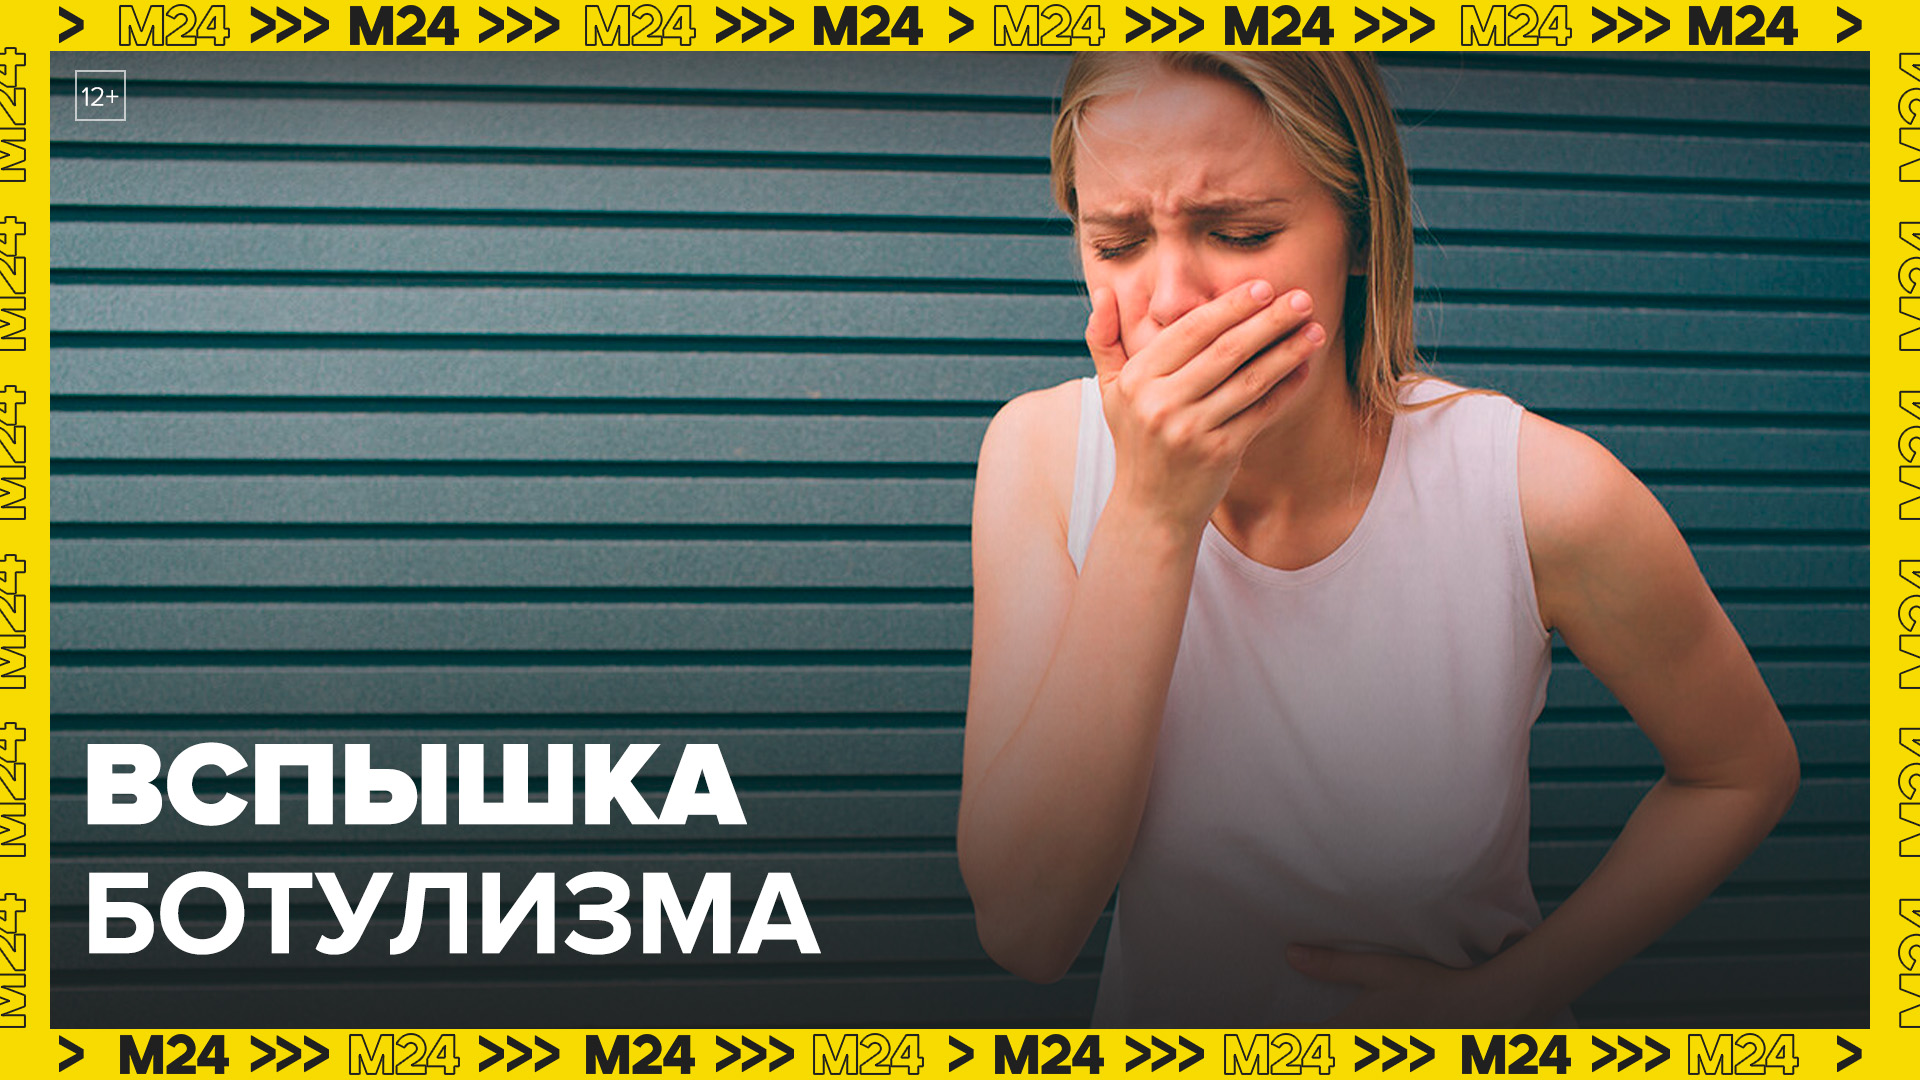 Роспотребнадзор приостановил продажу опасной продукции столичных сервисов доставки еды - Москва 24